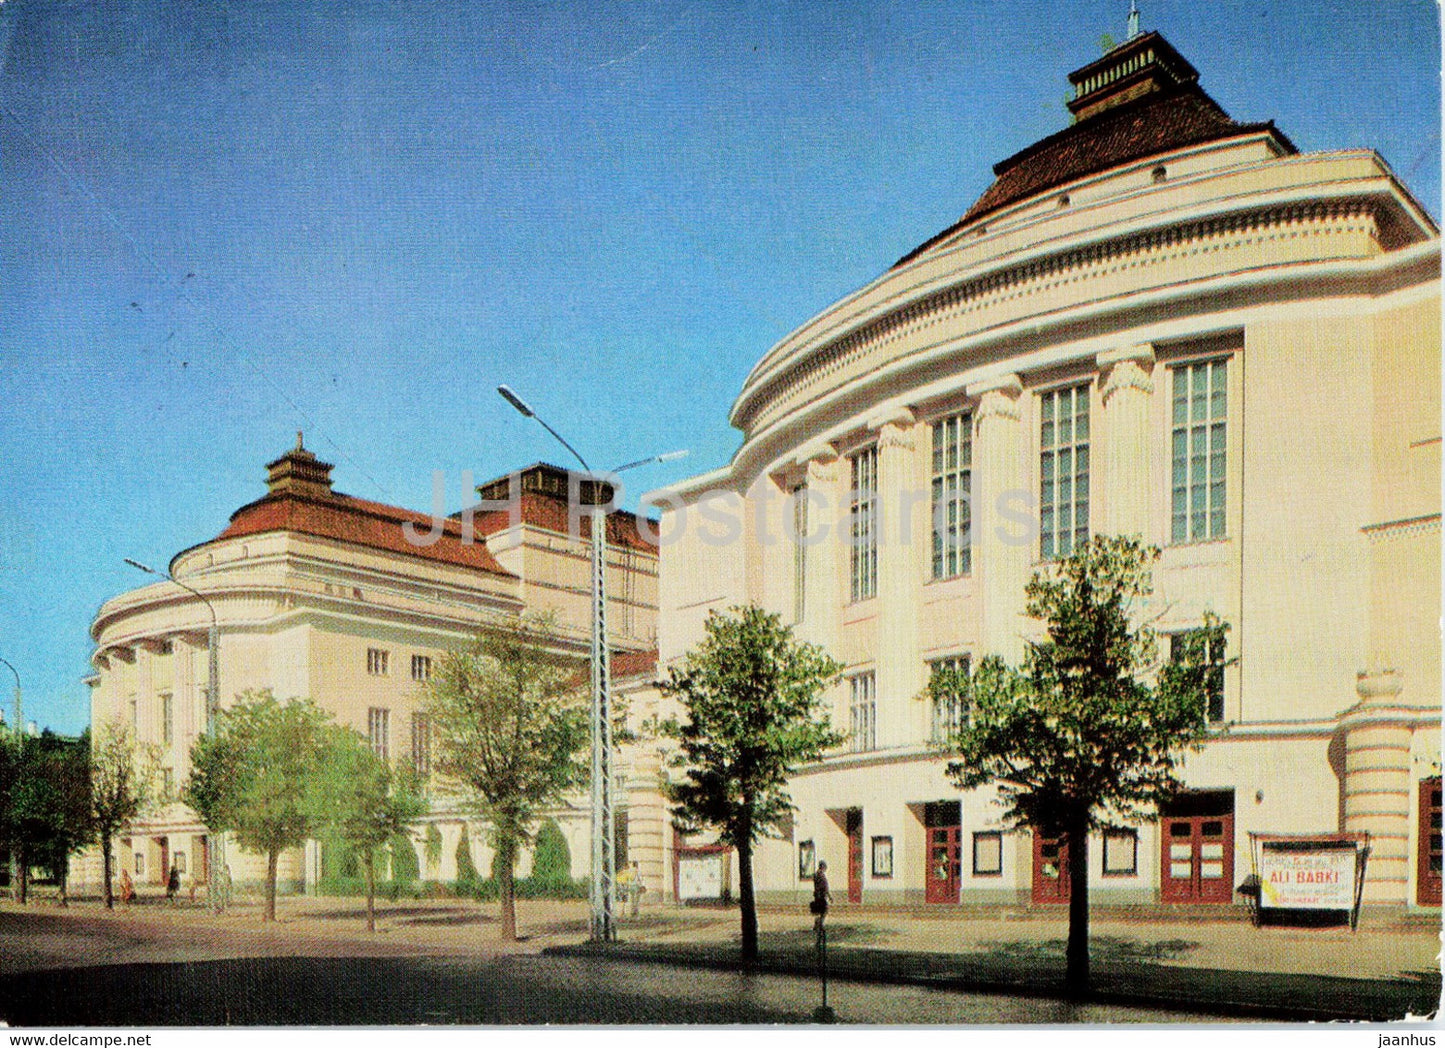 Tallinn - State Academic Opera and Ballet Theatre - postal stationery - 1977 - Estonia USSR - unused - JH Postcards